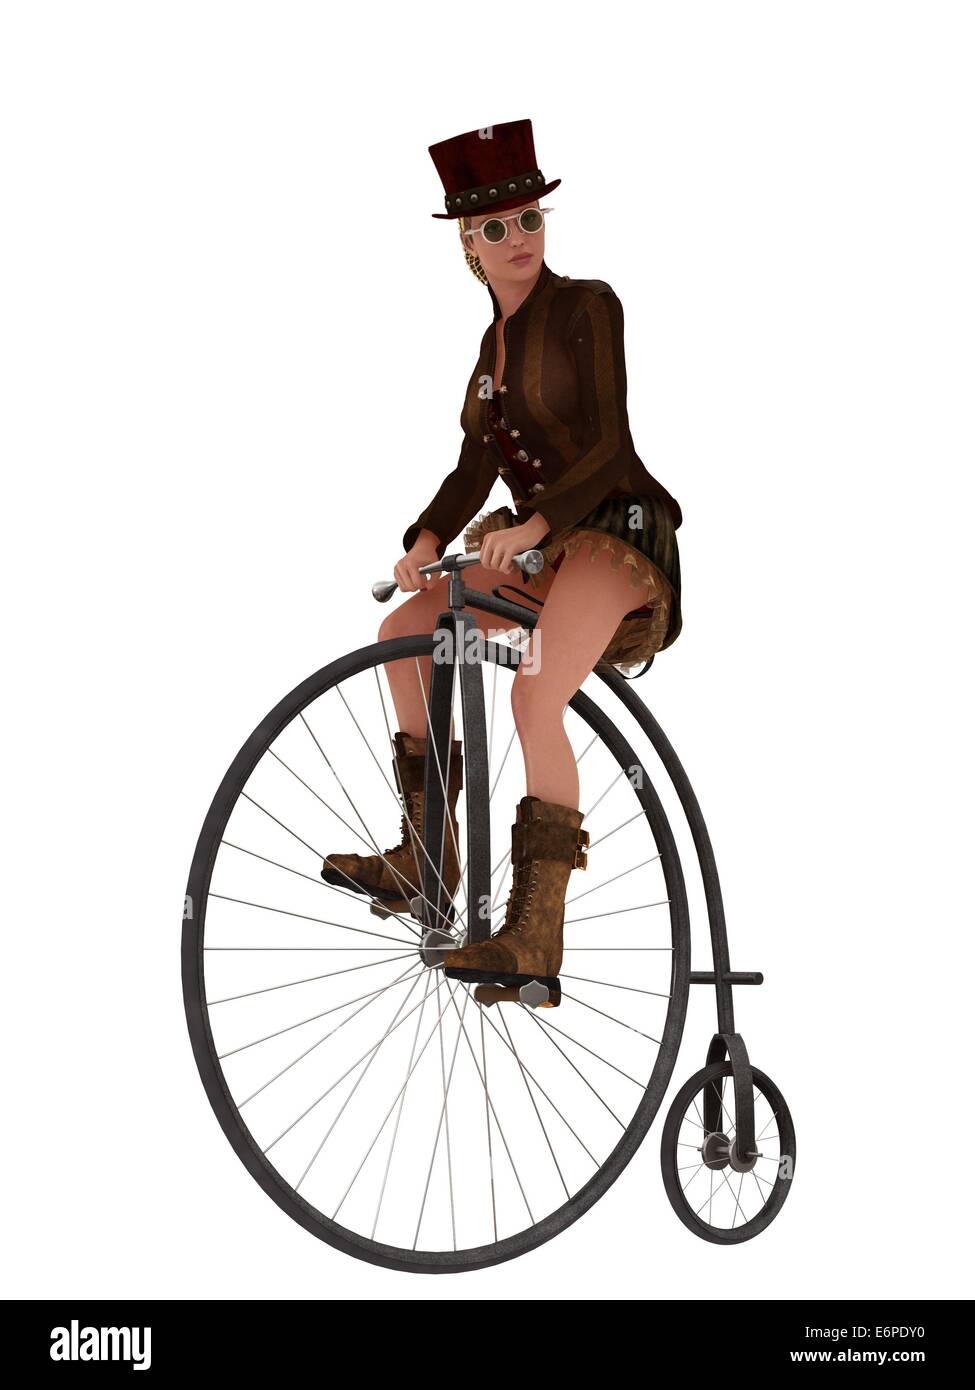 Steampunk femenino en el sombrero de copa y falda corta montando bicicleta Penny Farthing Foto de stock